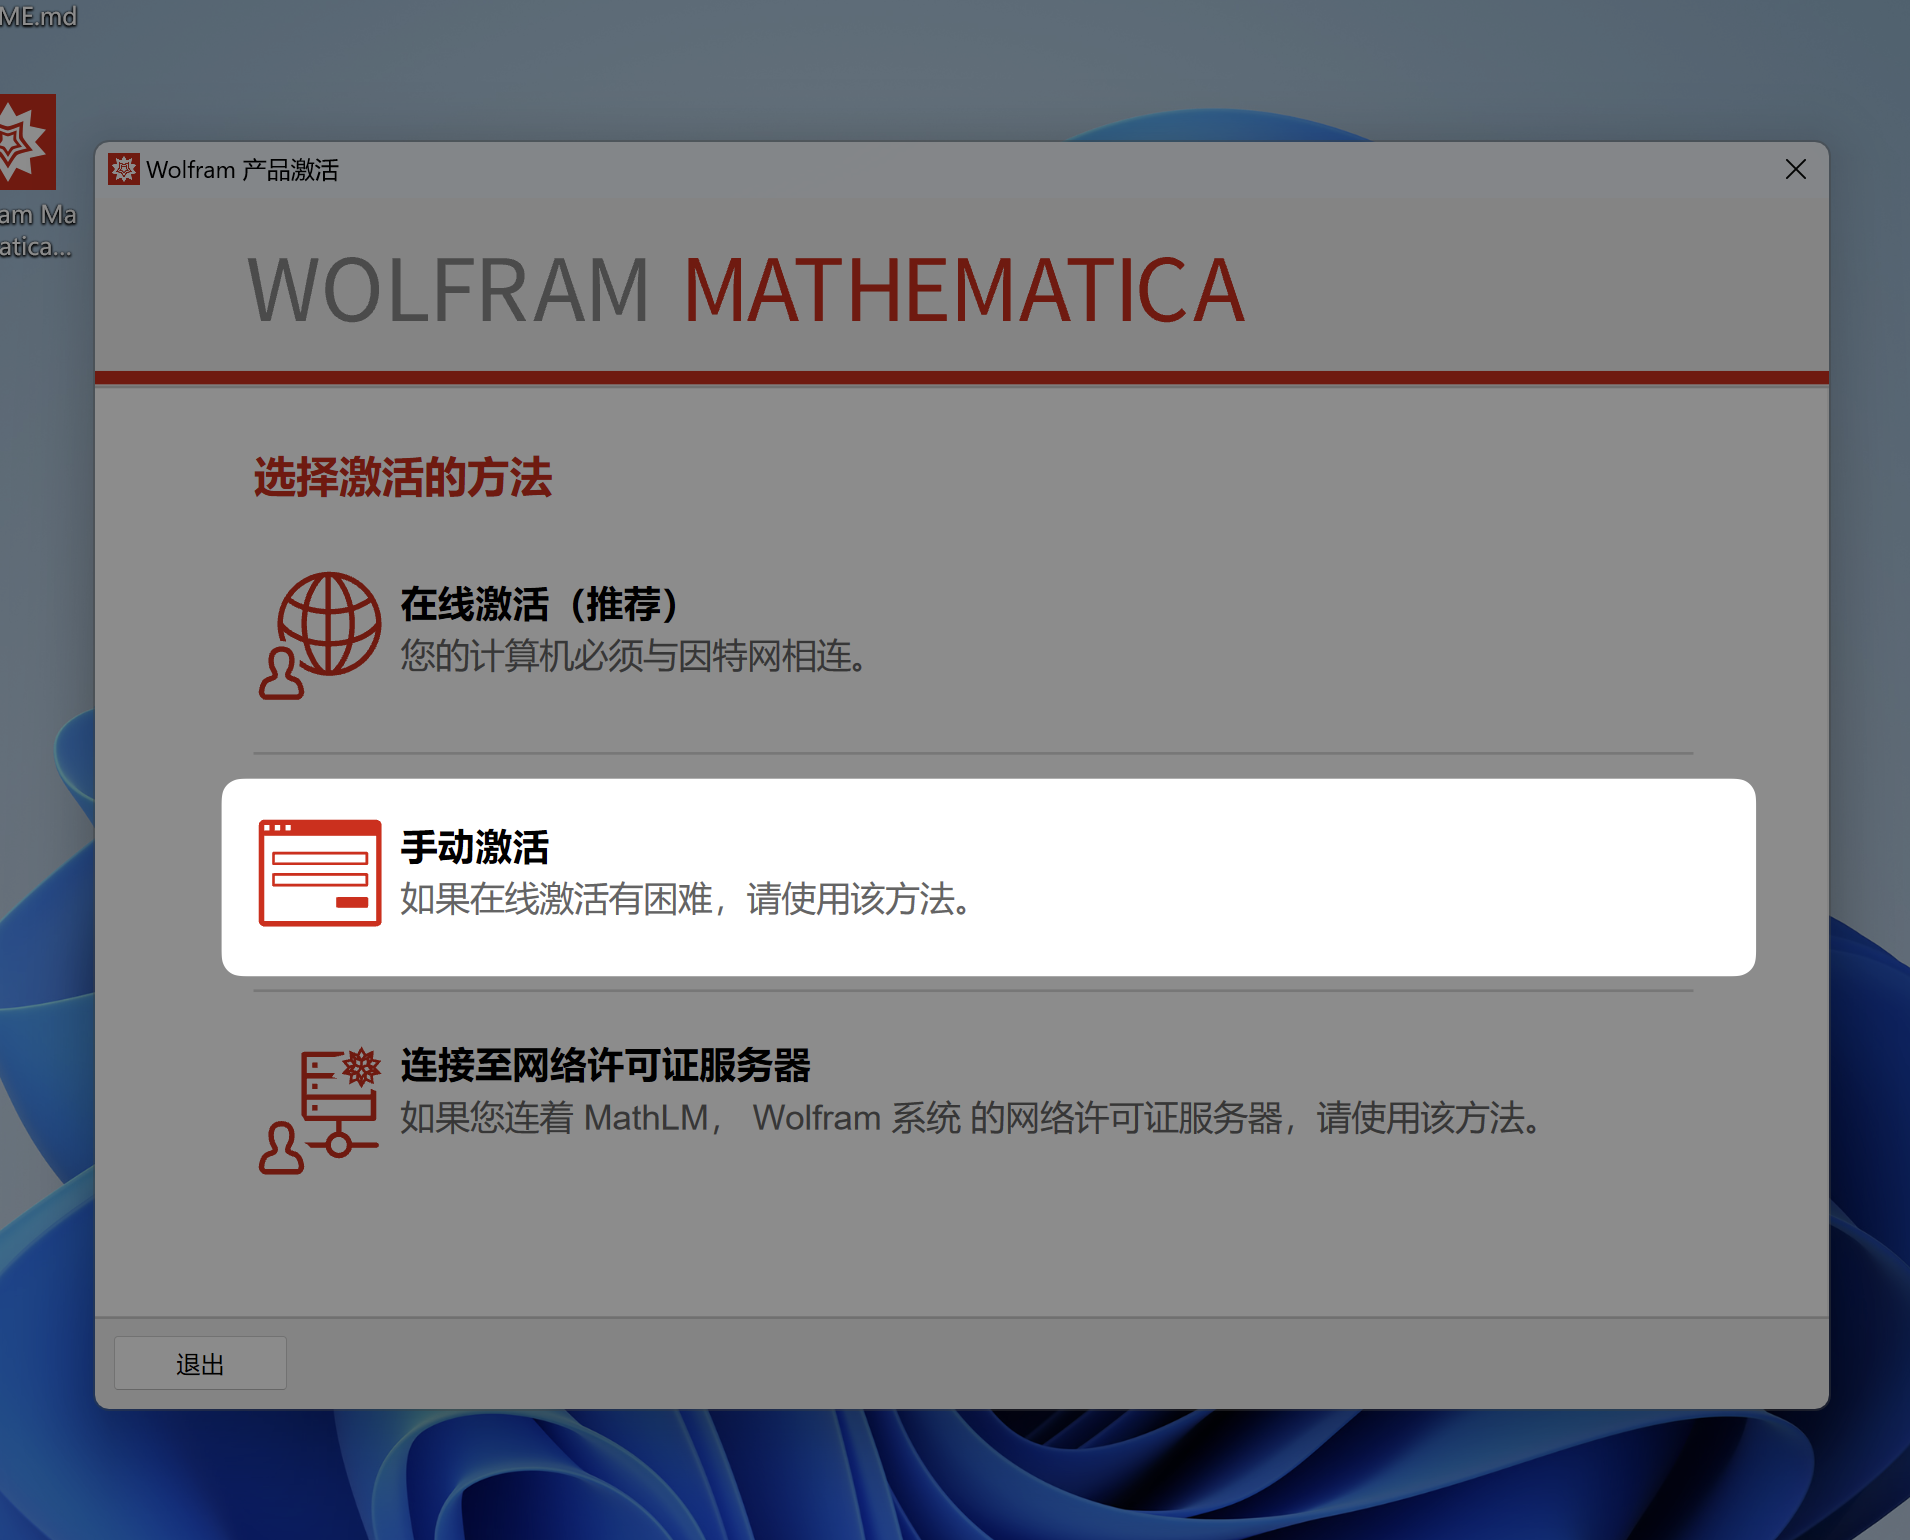 「互联网速记」也许是最优雅的 Wolfram Mathematica 破解方式 - 7